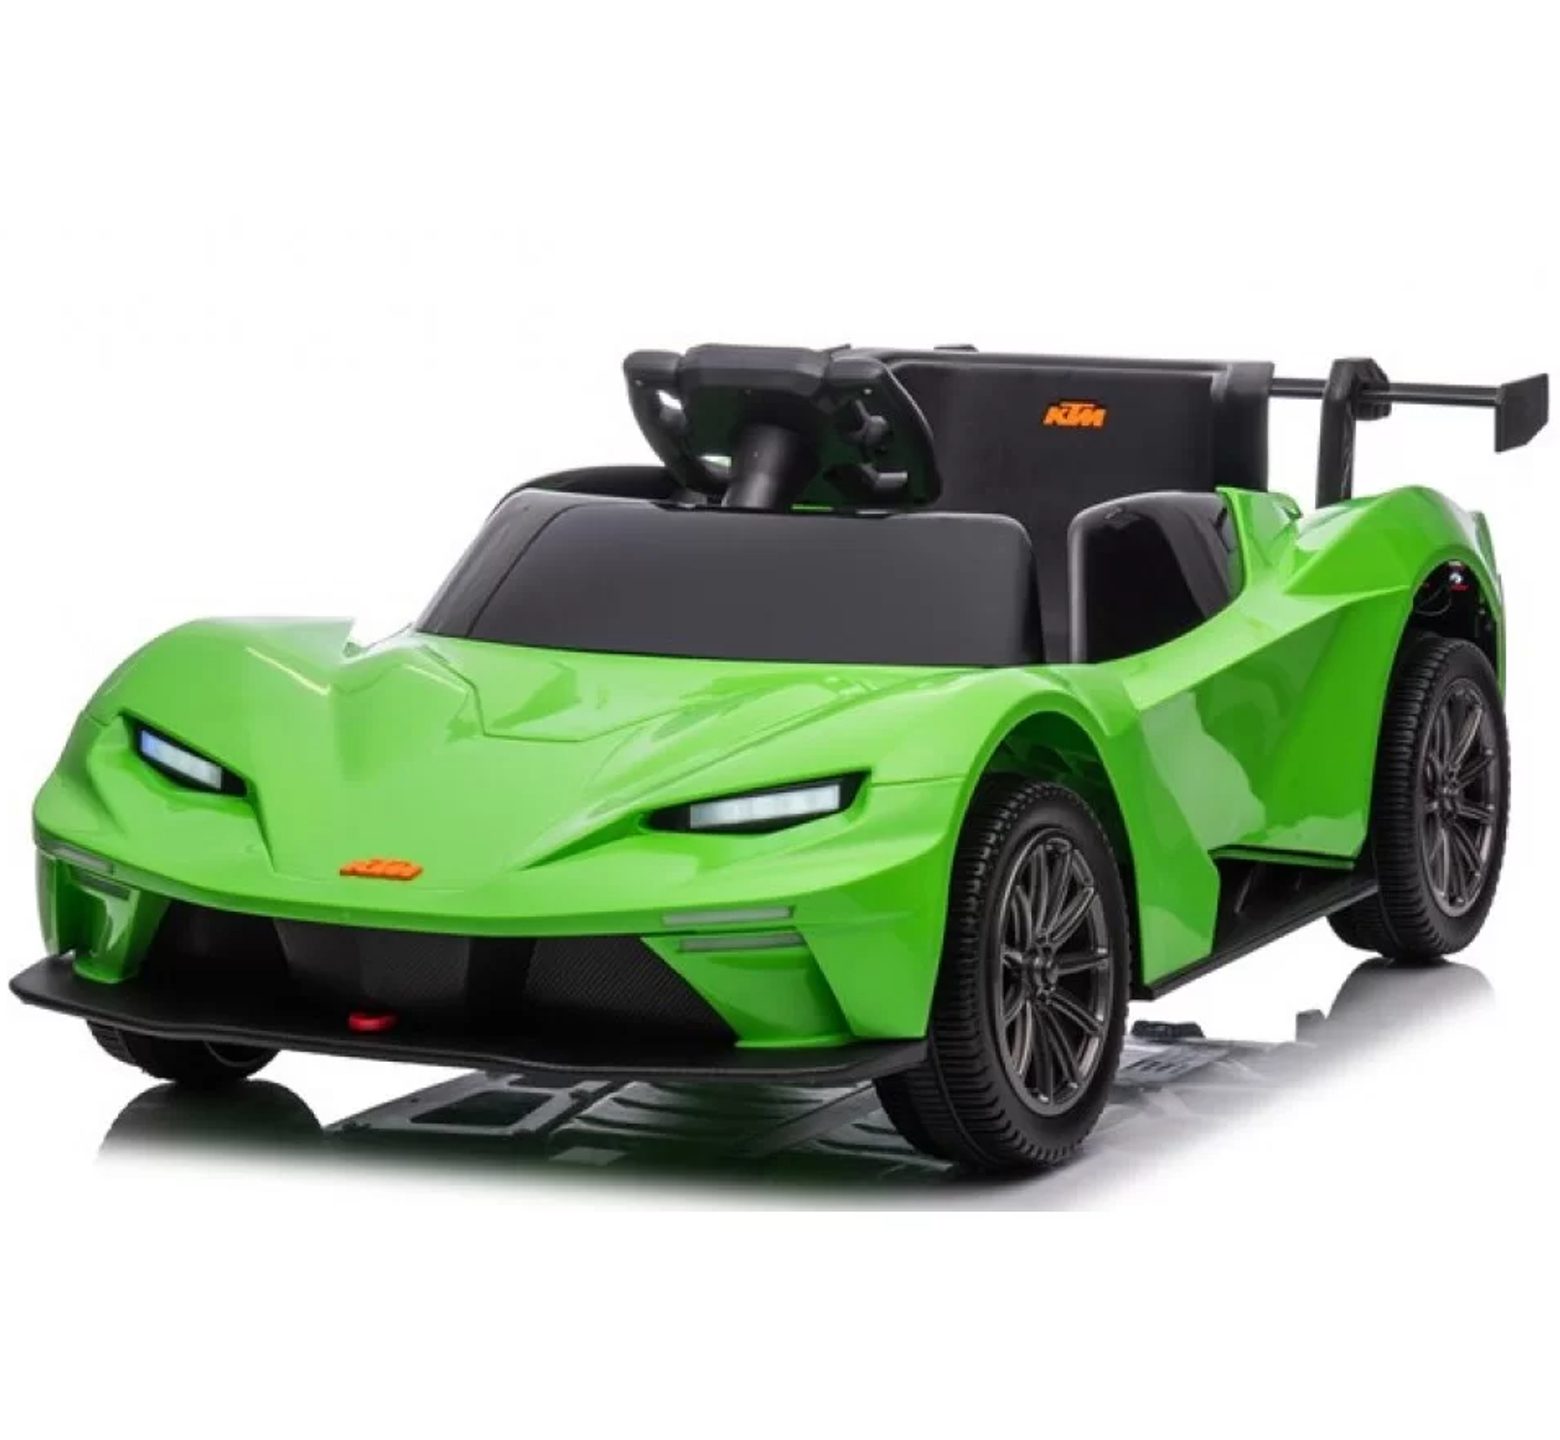 Ηλεκτροκίνητο αυτοκίνητο Licensed KTM 12V με δερμάτινο κάθισμα και ελαστικά τύπου αυτοκινήτου σε πράσινο χρώμα